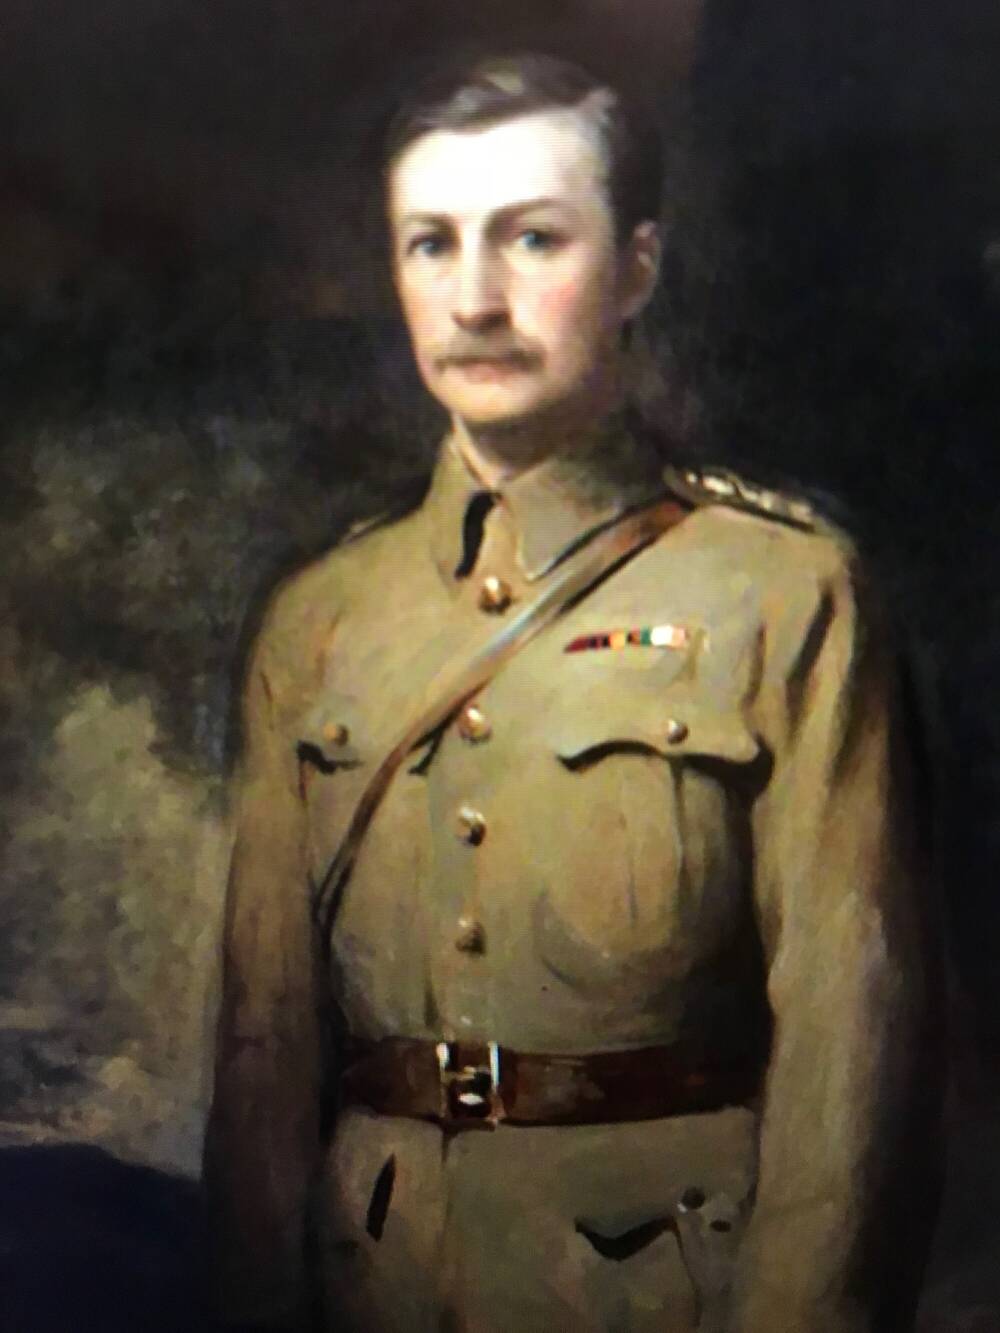 Portrait of a man in army uniform.